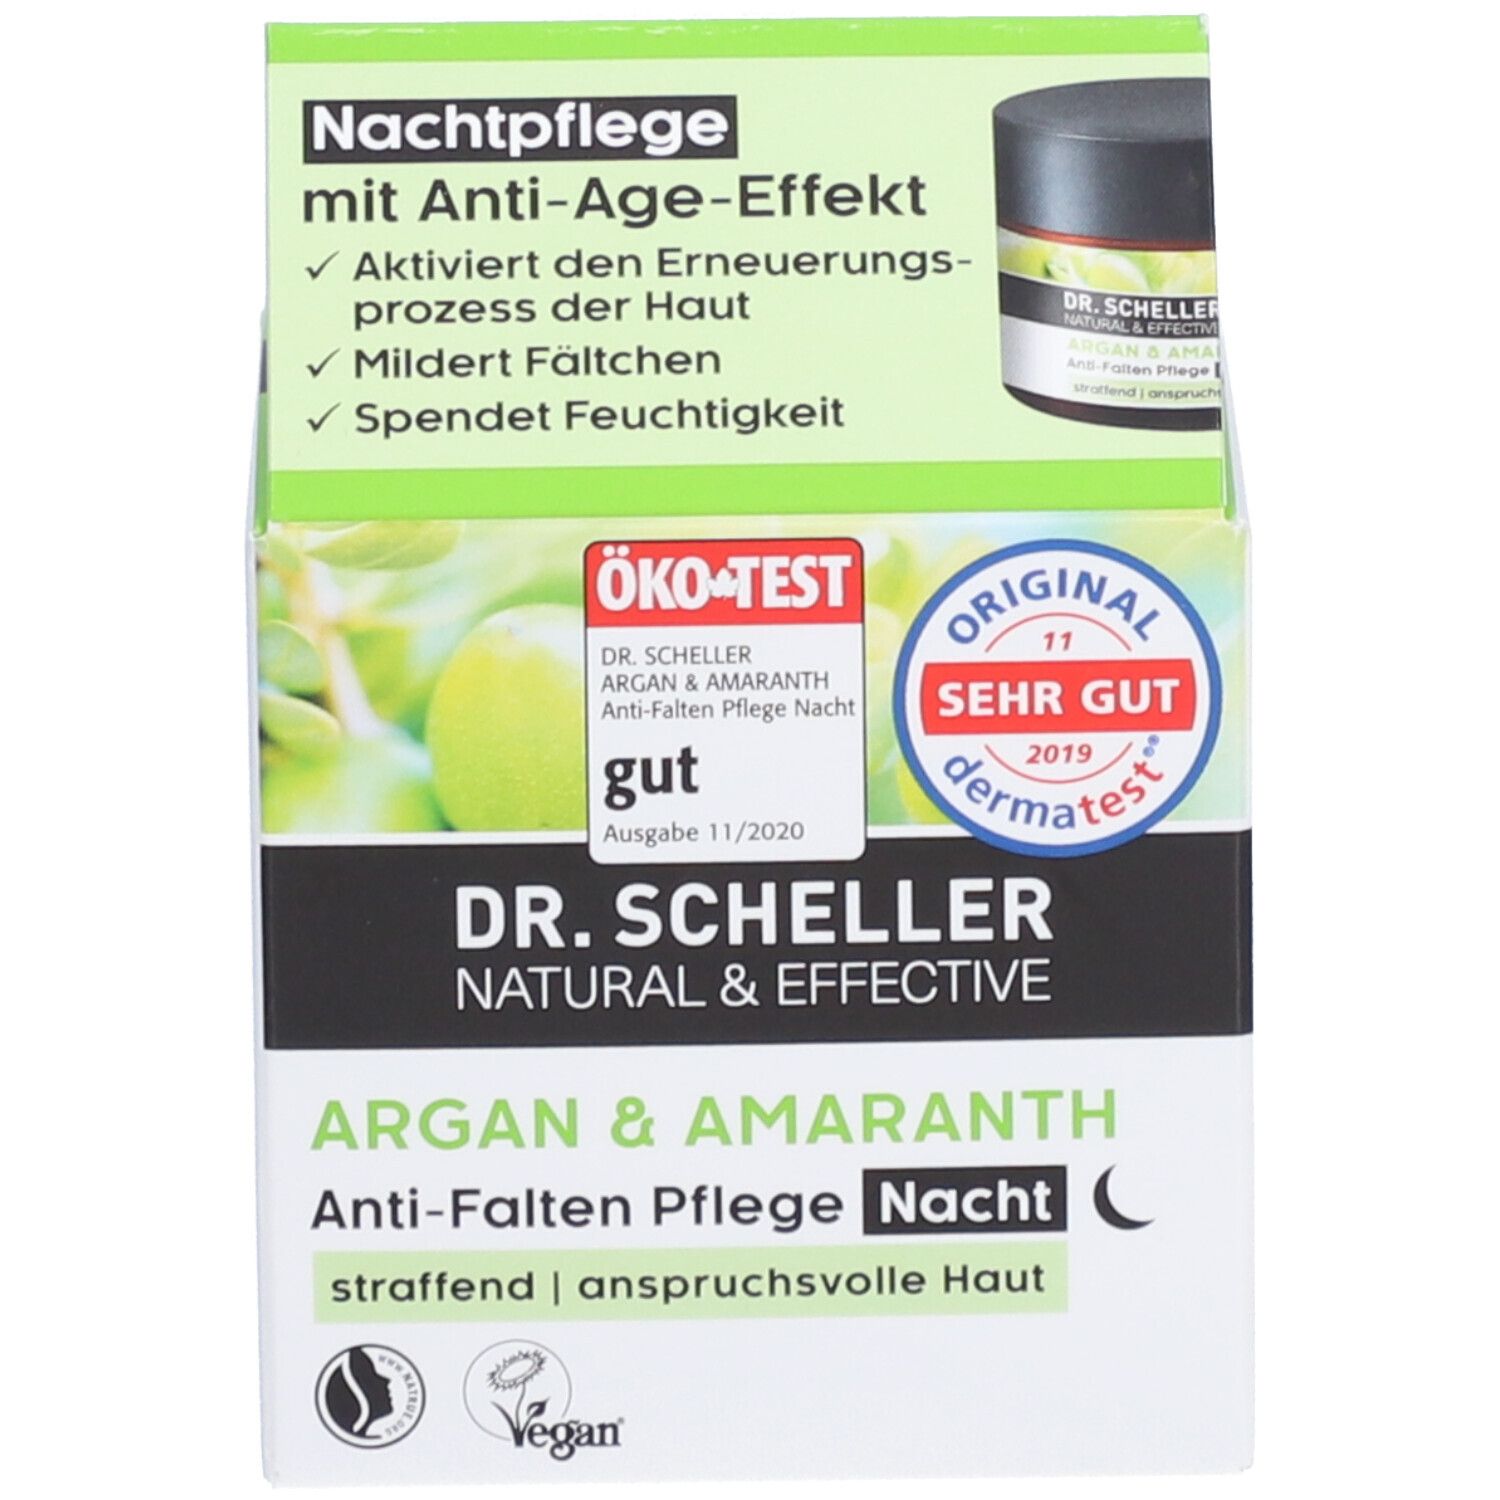 Dr. Scheller Anti-Falten Nachtpflege, Arganöl-Amaranth